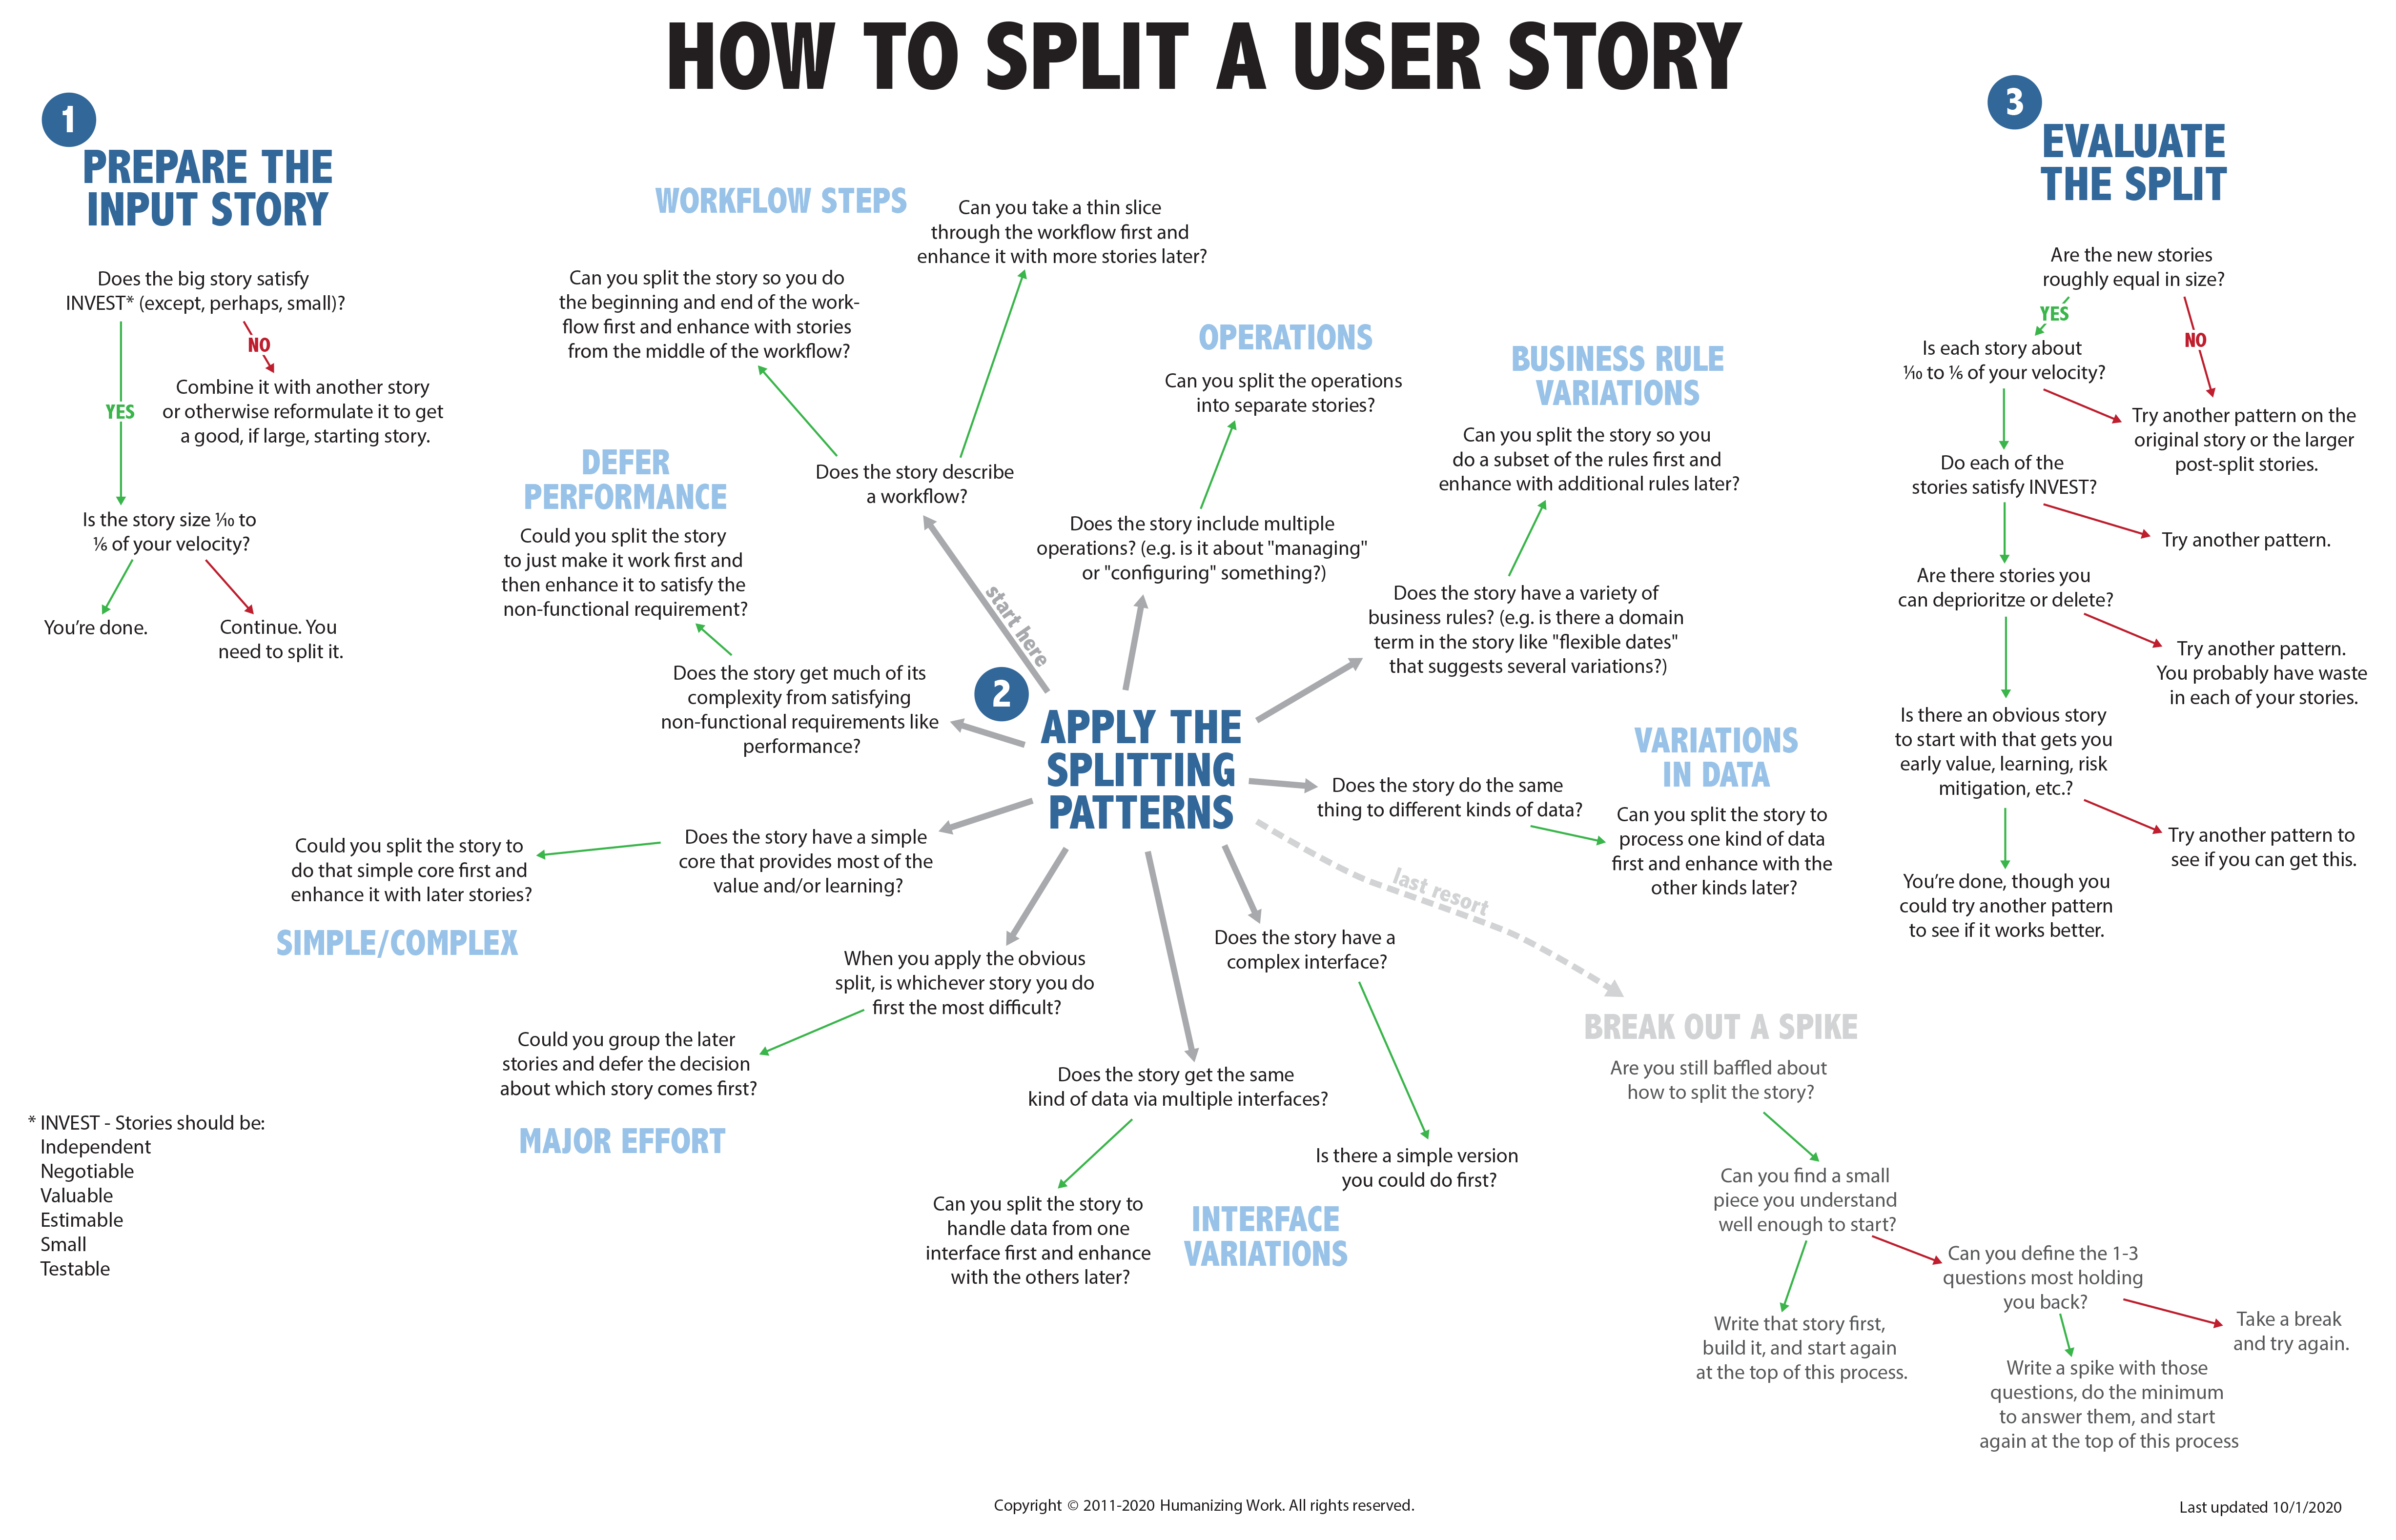 User rules. Юзер стори. User story схема. Карта пользовательских историй пример. How to Split a user story.